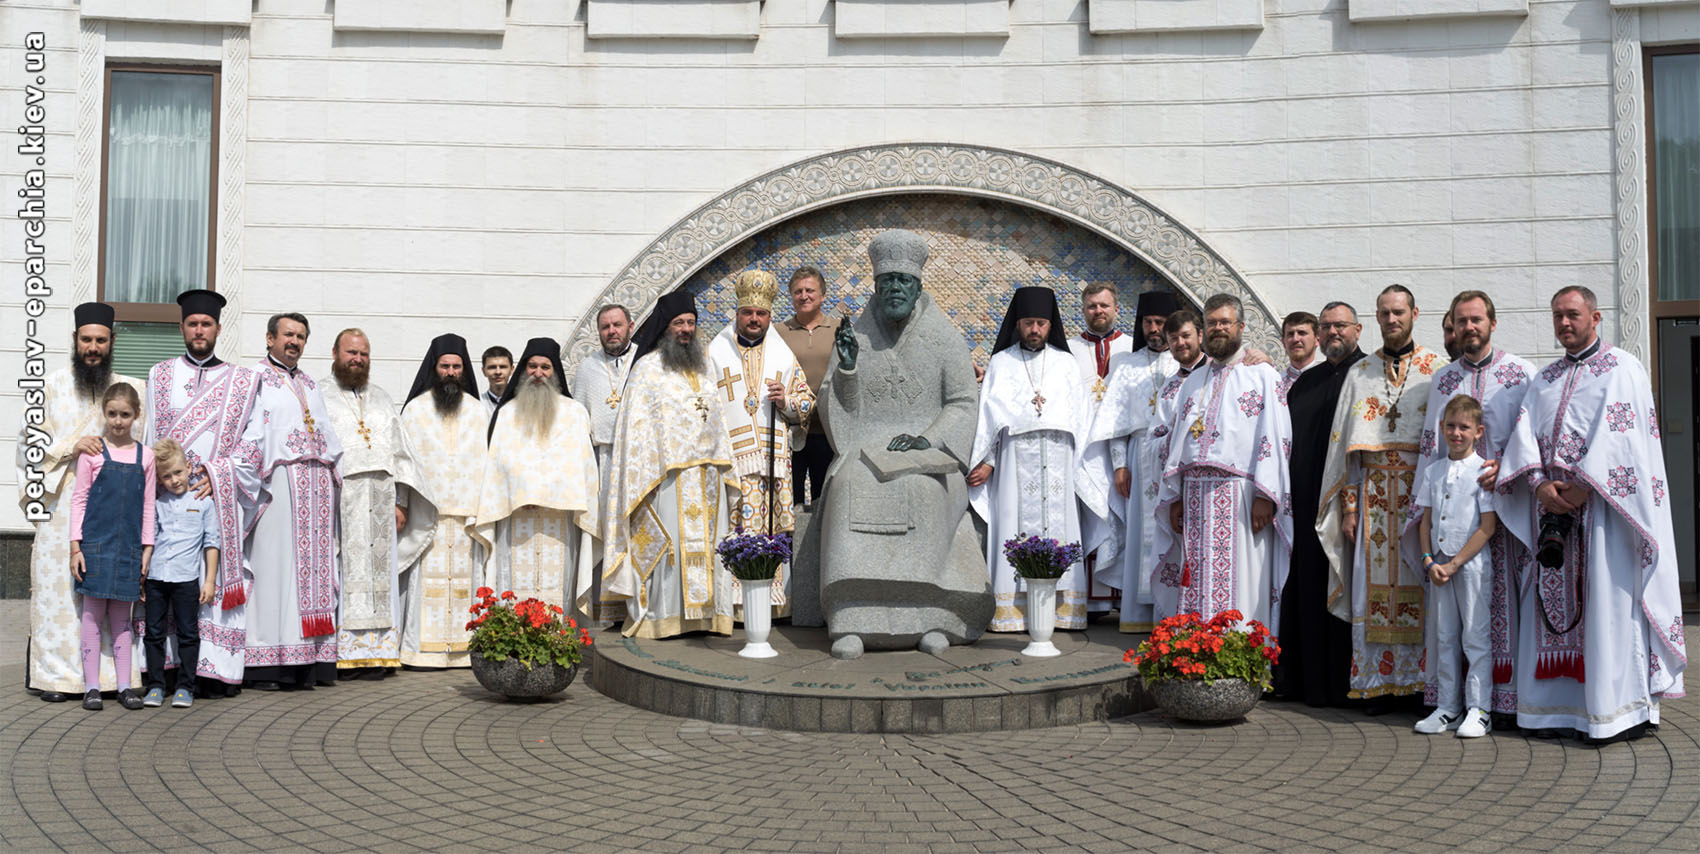 Літургія за участю афонських монахів у кафедральному соборі